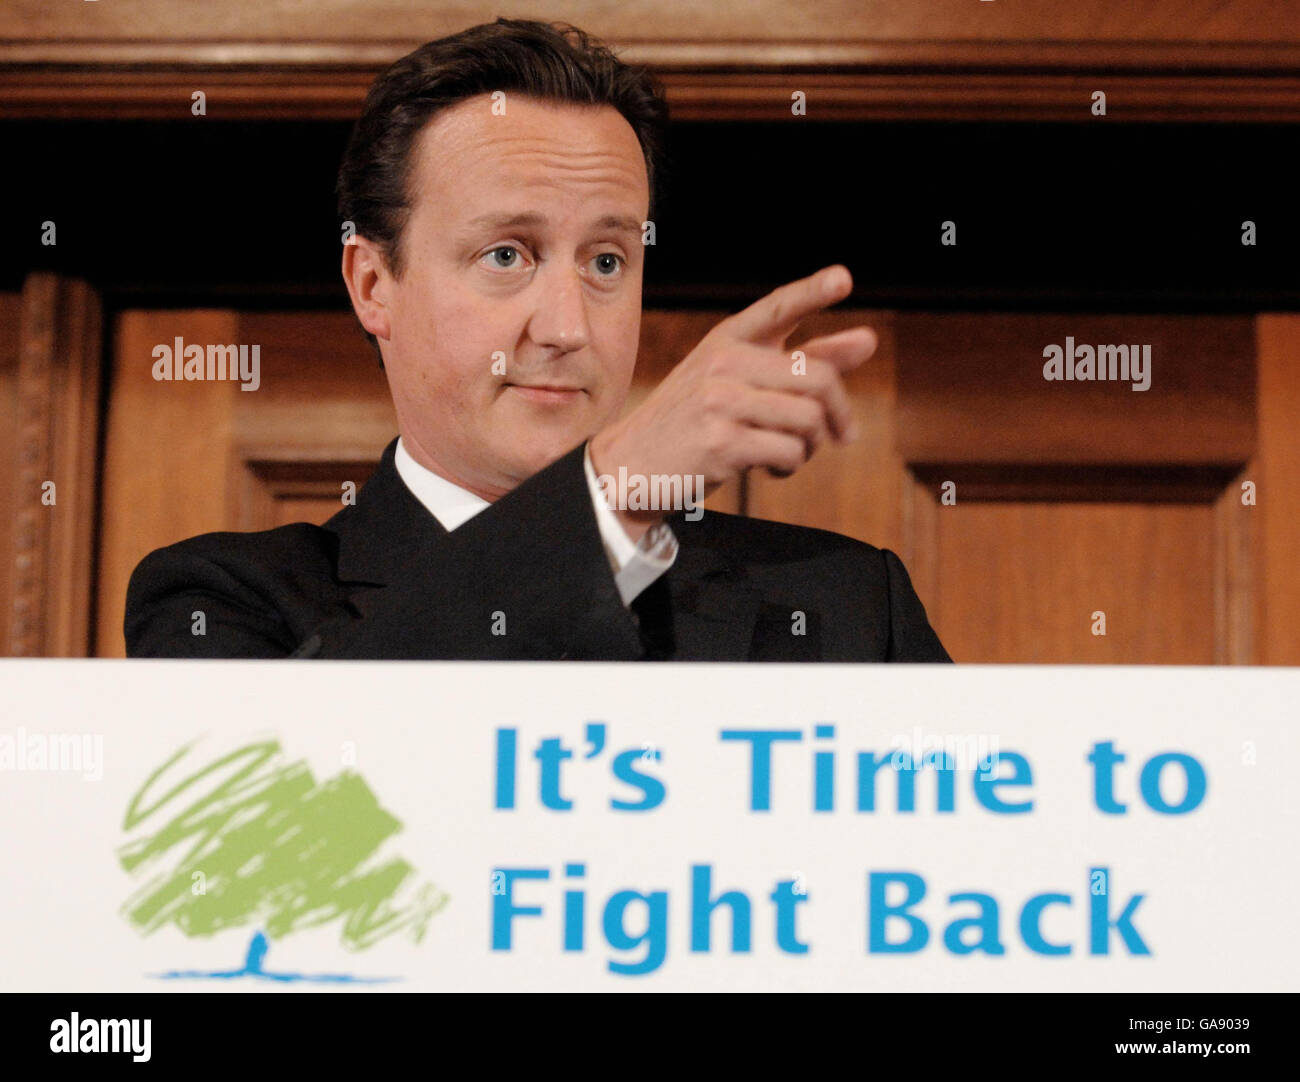 Il leader del Partito conservatore David Cameron durante una conferenza stampa a Londra, dove ha svelato piani difficili per affrontare la "crisi del crimine" britannica rafforzando i poteri della polizia e contrastando la violenza casuale nella cultura popolare. Foto Stock